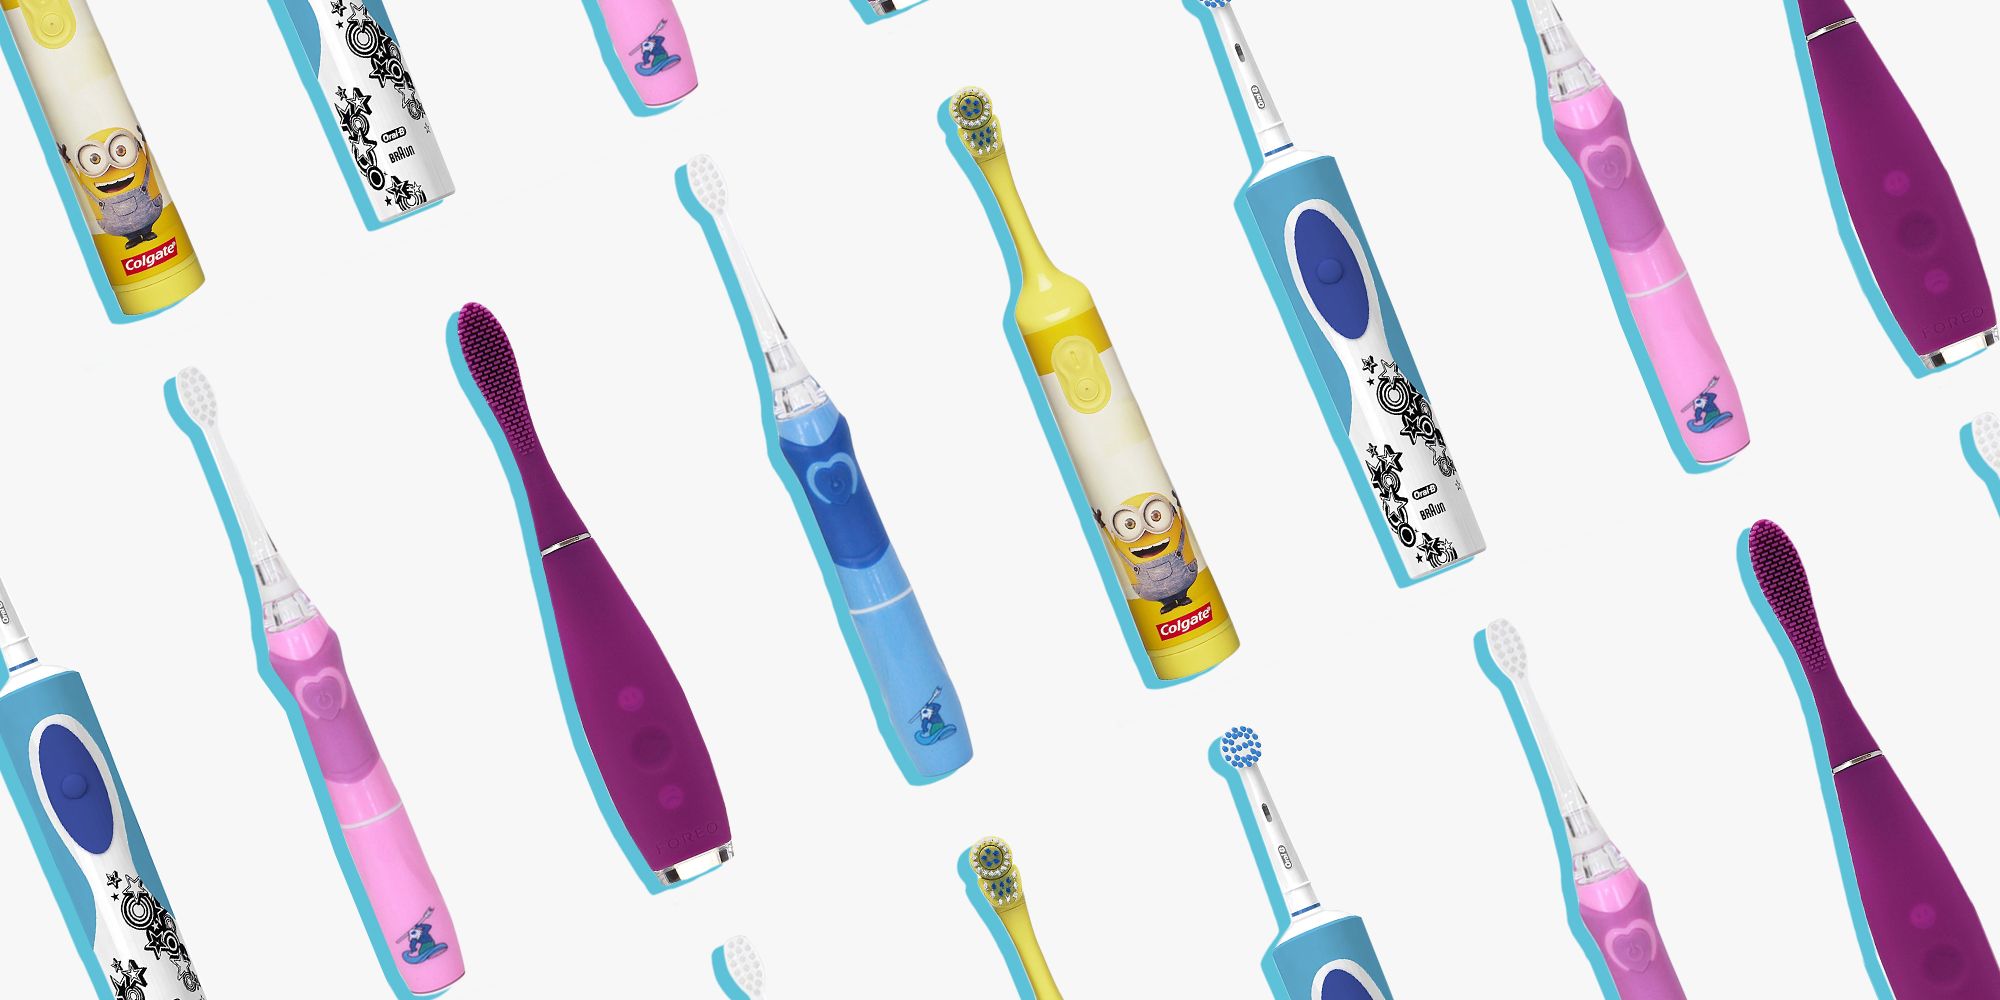 electric toothbrush fun